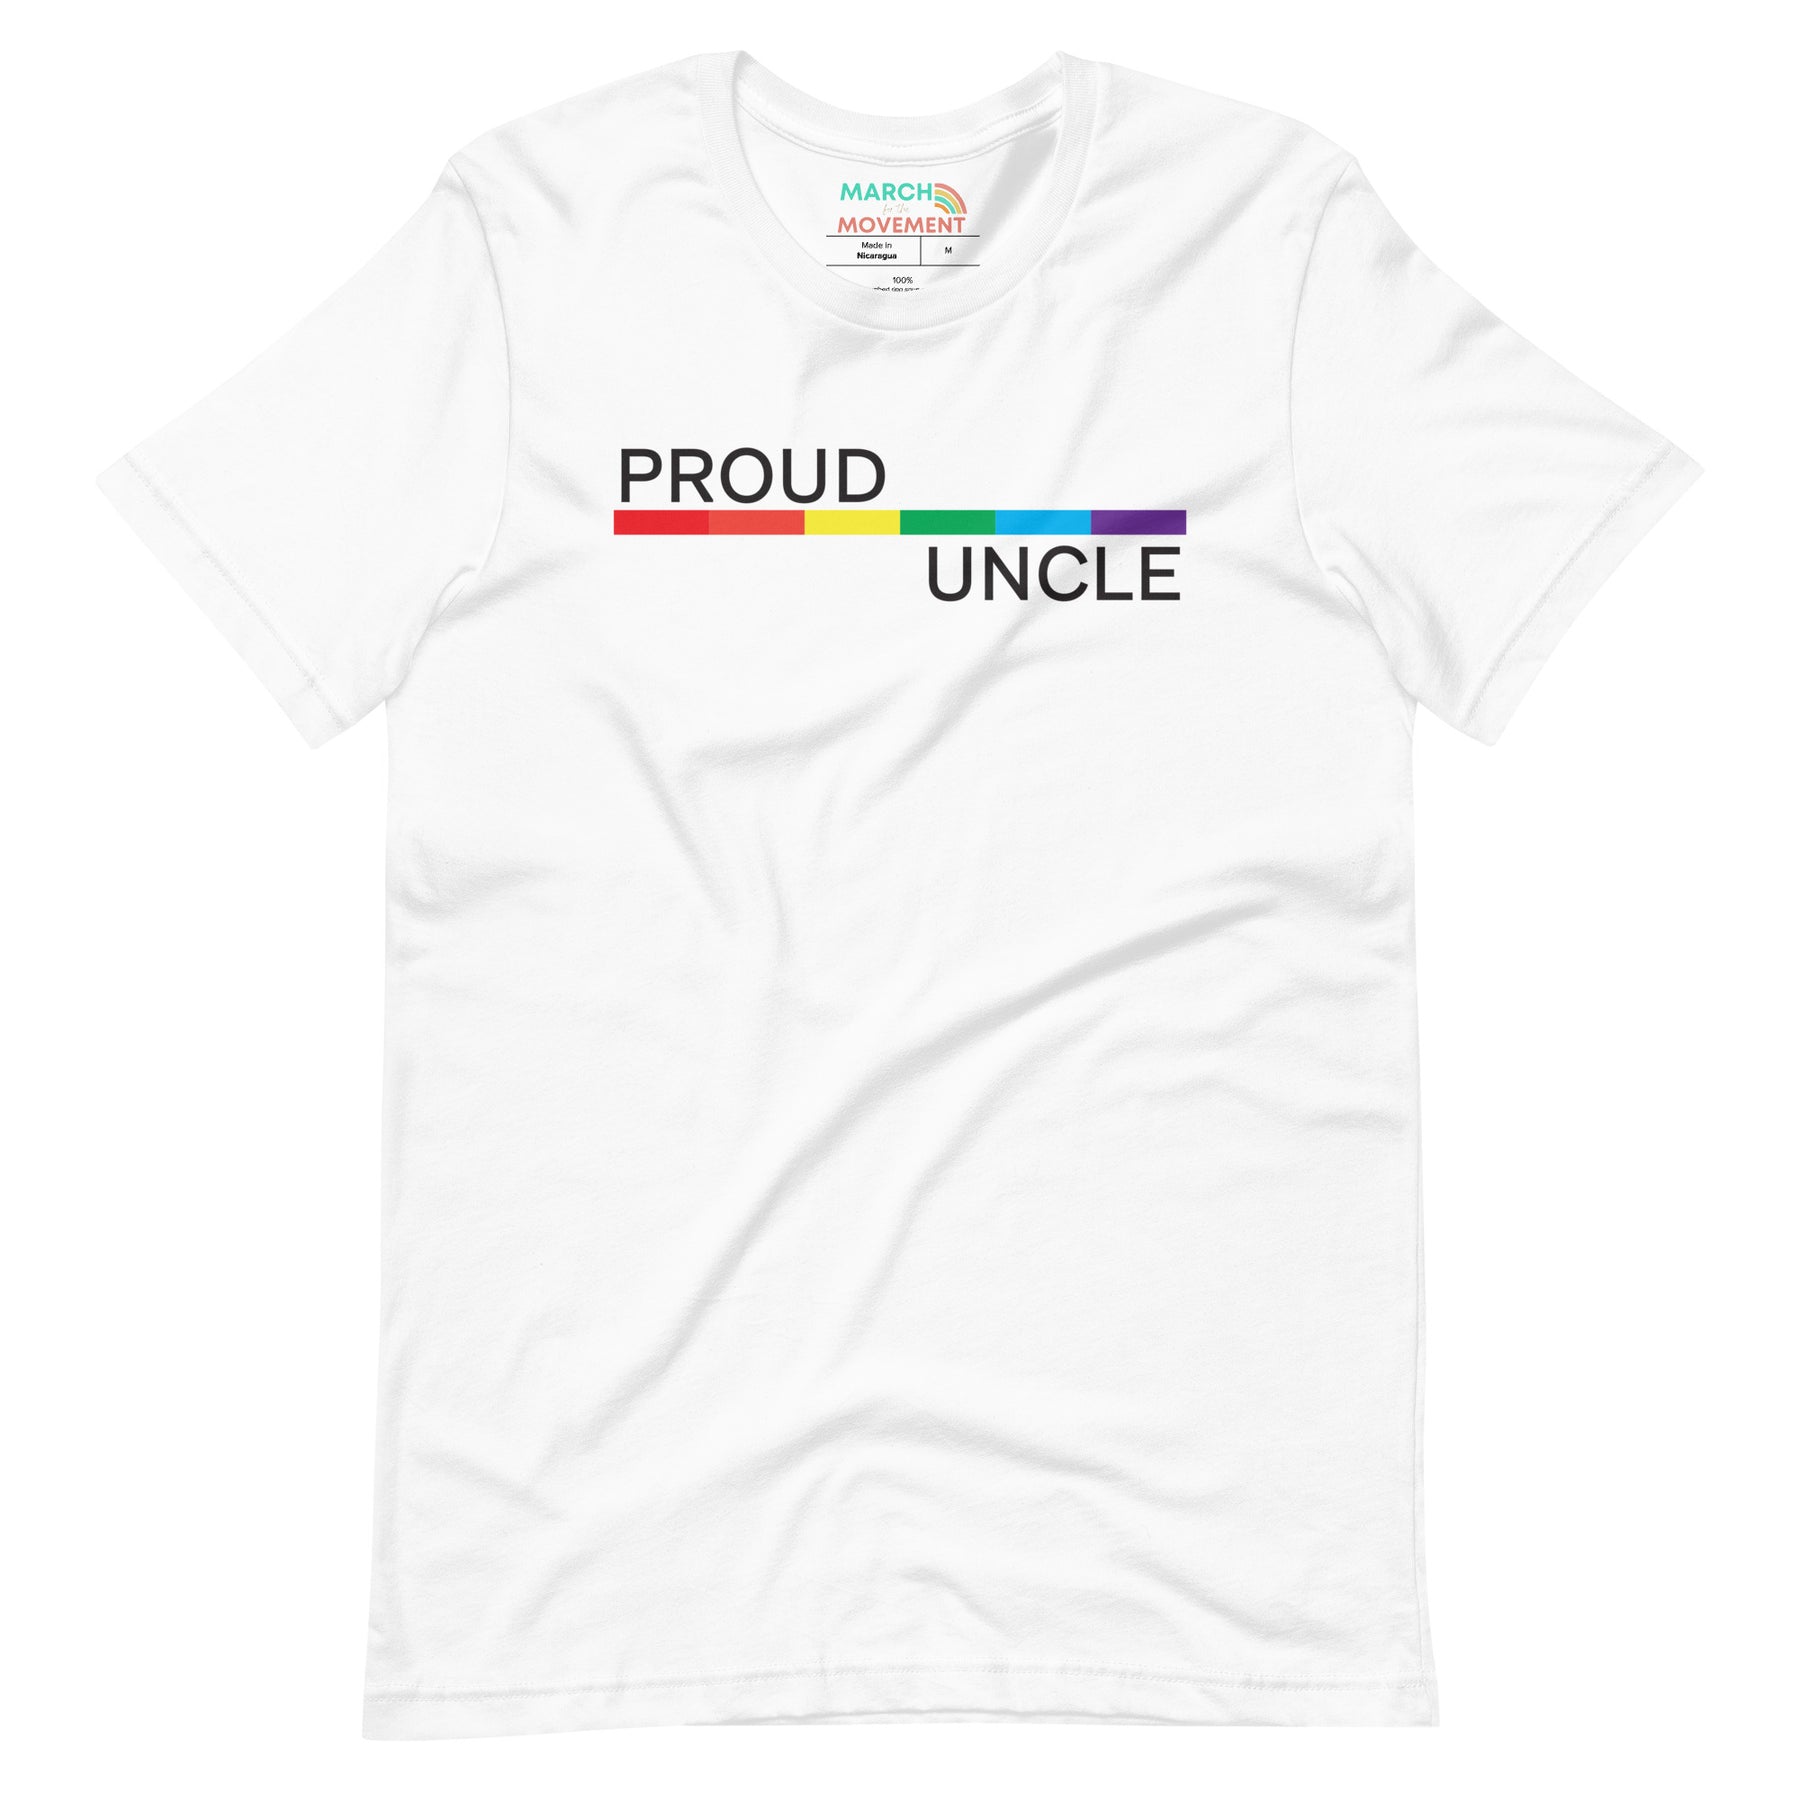 Proud Uncle T-Shirt